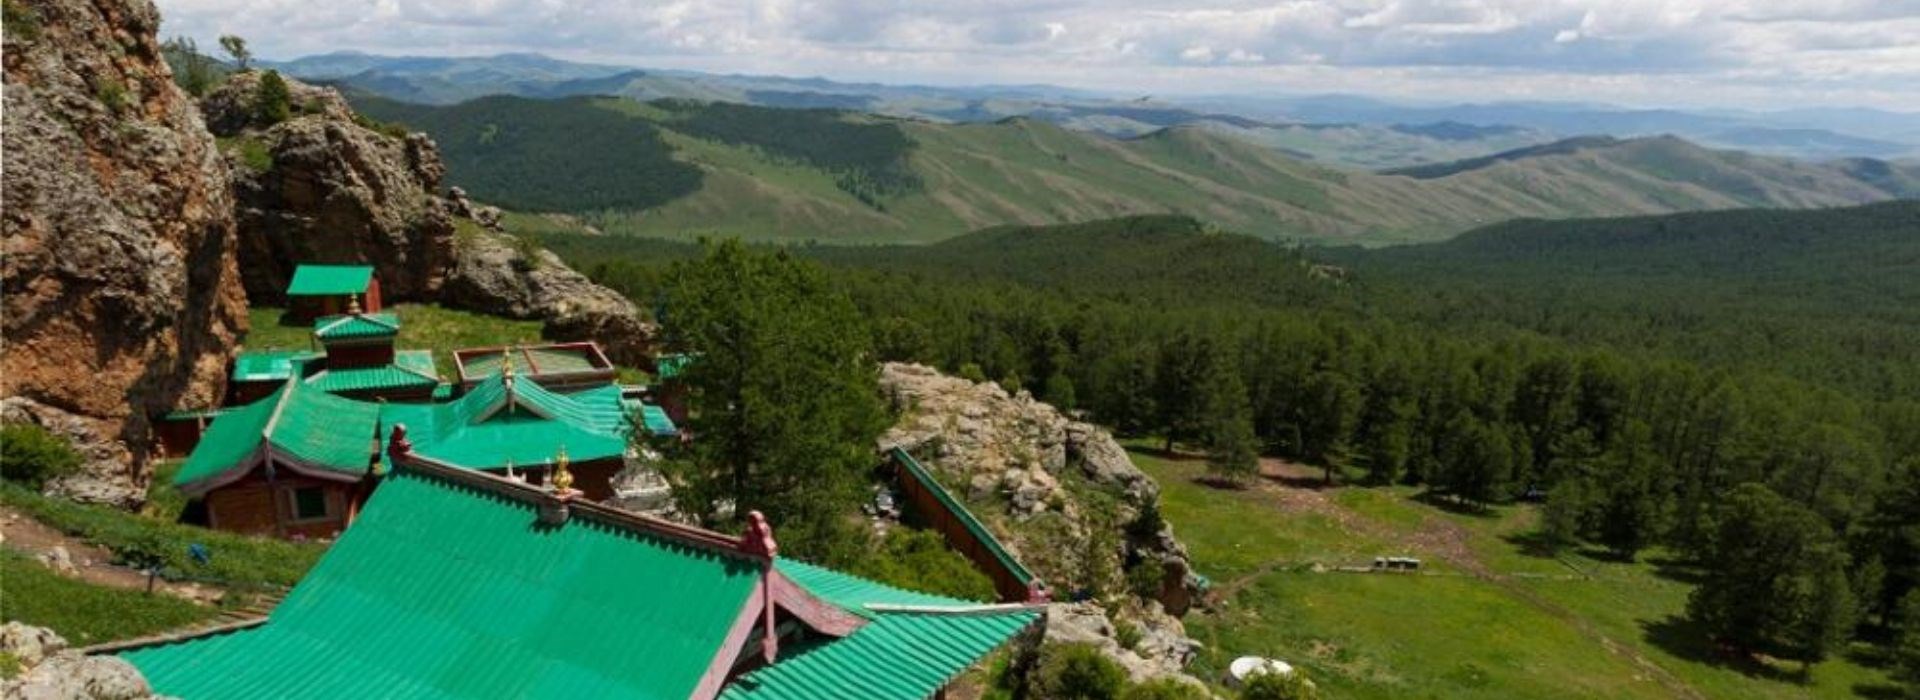 Visiter Le Monastère de Tovkhon - Mongolie